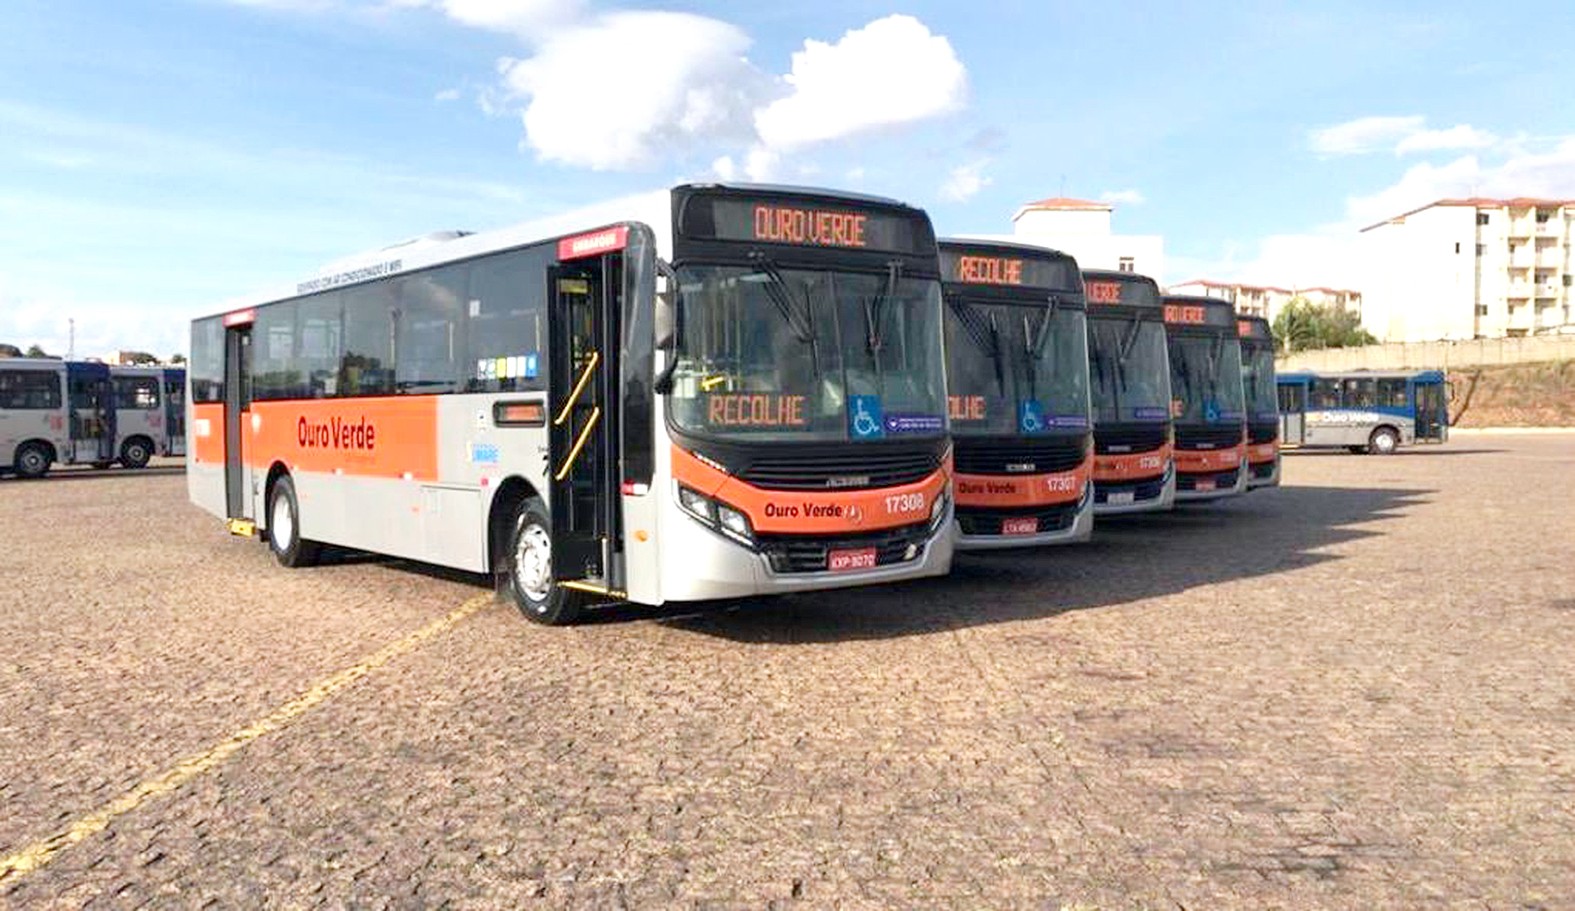 Transporte urbano amplia frota com ônibus novos e modernos em circulação